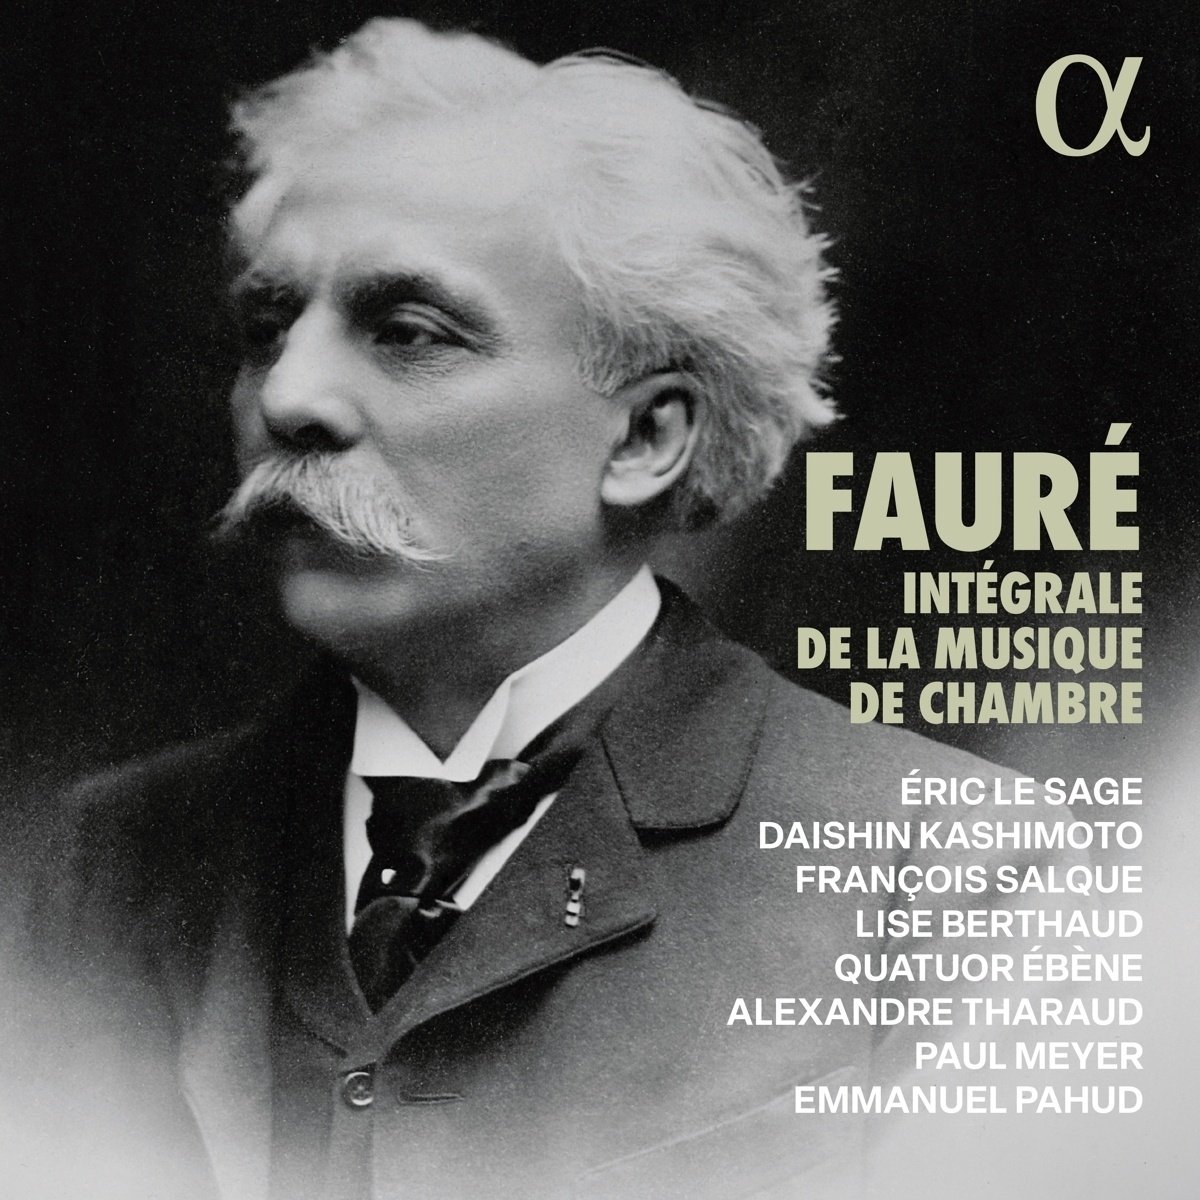 Fauré: Intégrale De La Musique De Chambre - Alexandre Tharaud  Emmanuel Pahud  Quatuor Ébène. (CD)